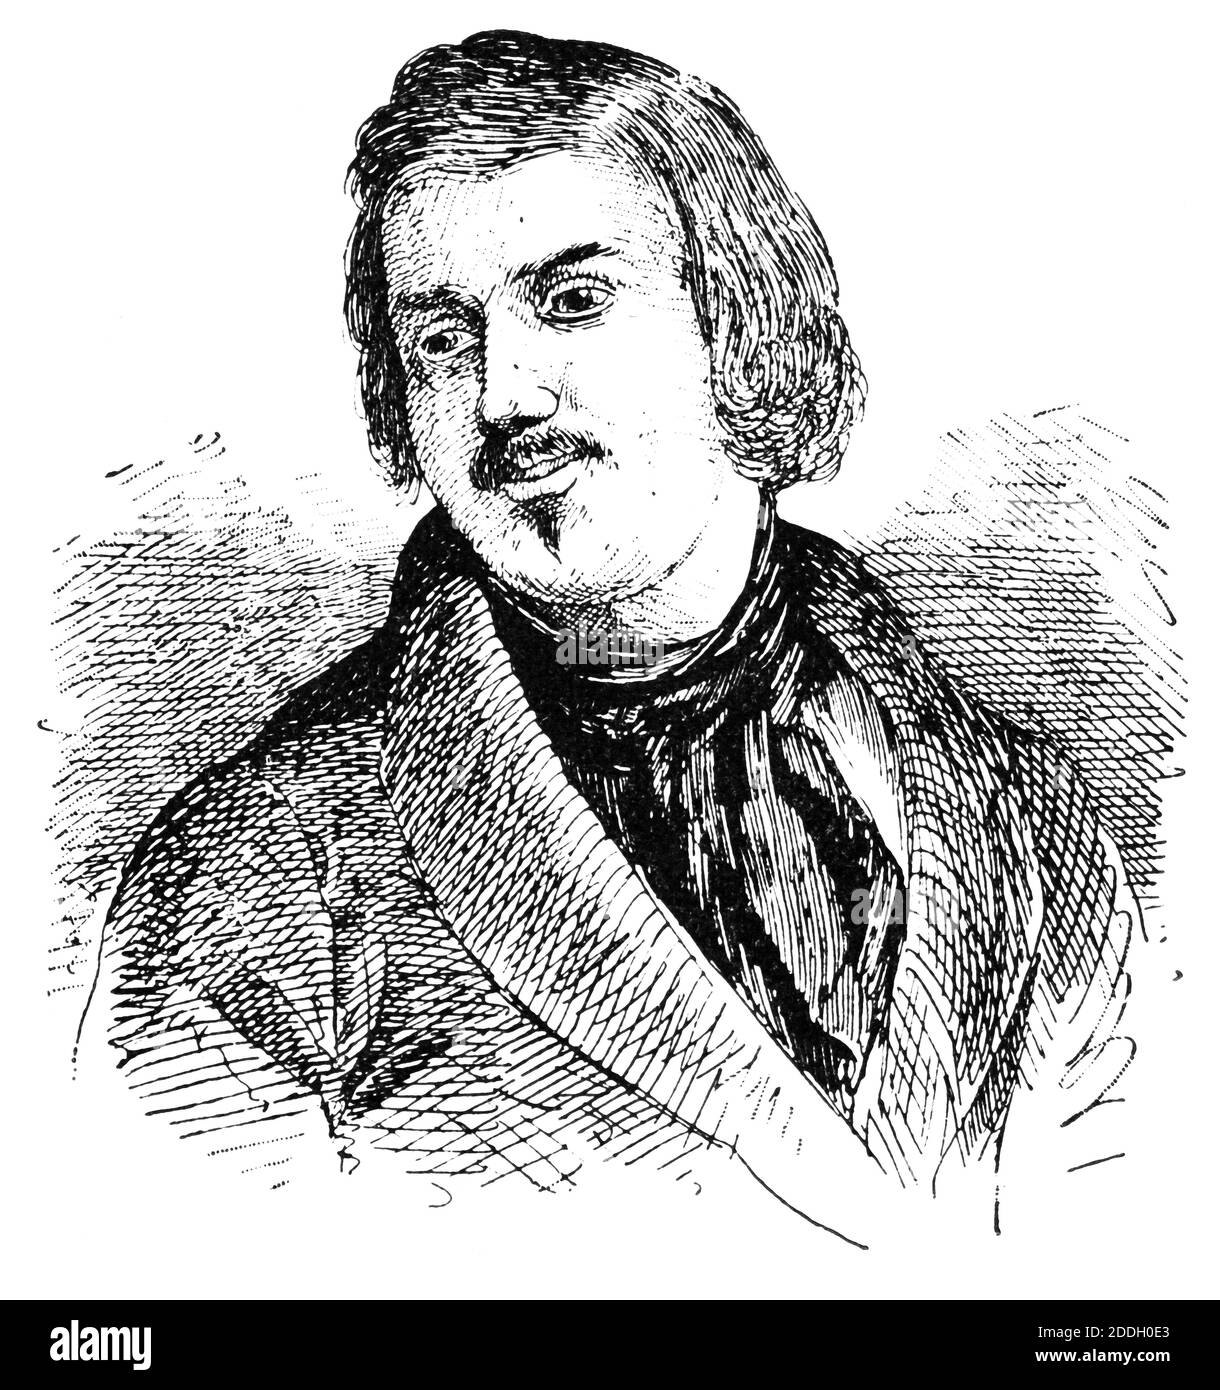 Porträt von Honore de Balzac - ein französischer Schriftsteller und Dramatiker. Illustration des 19. Jahrhunderts. Weißer Hintergrund. Stockfoto